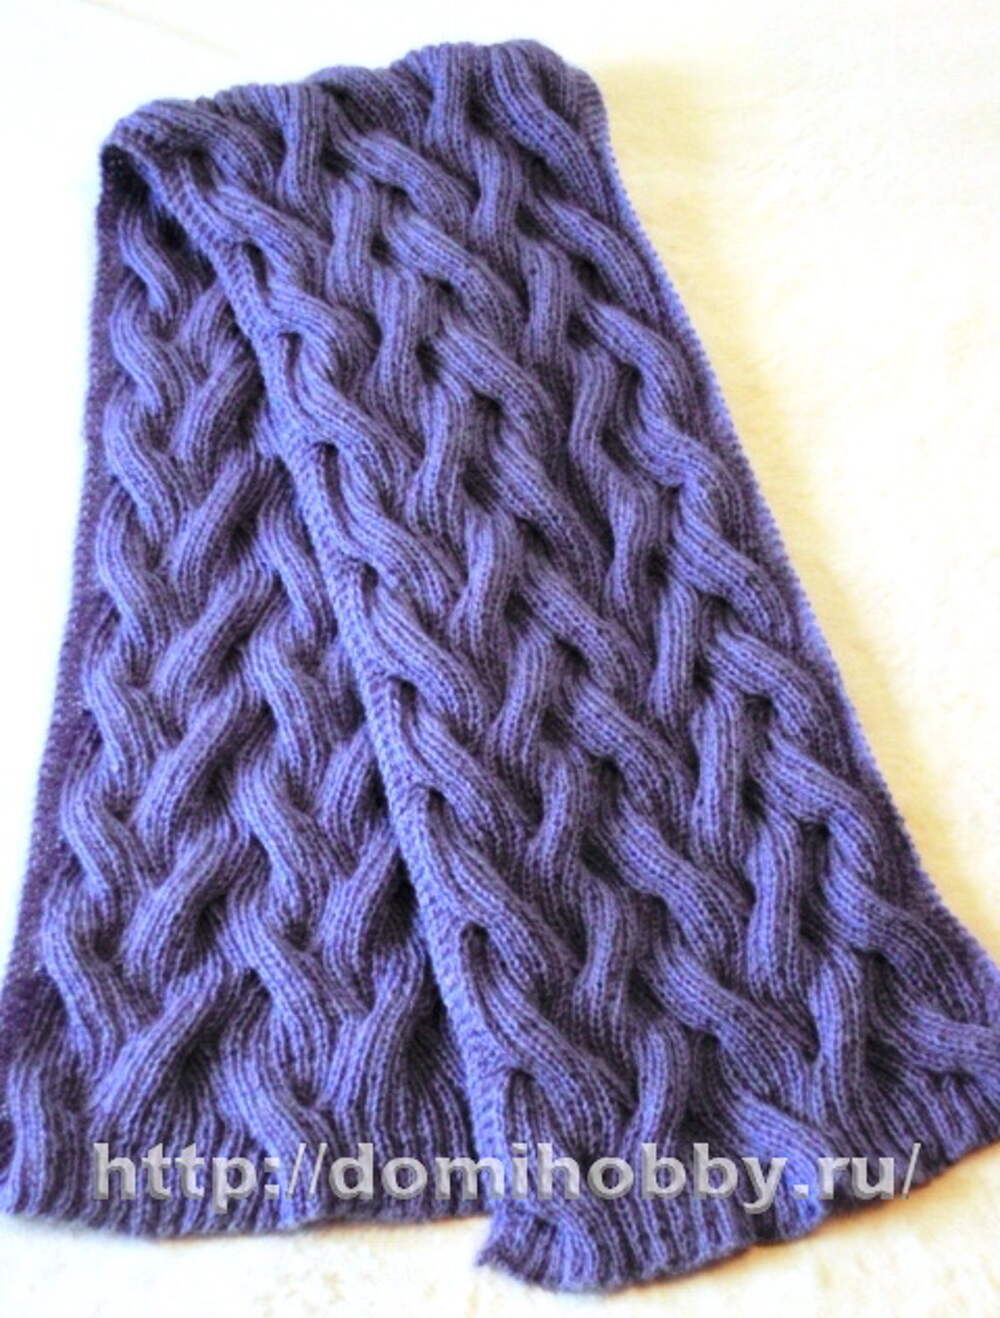 Объемный узор для шарфа